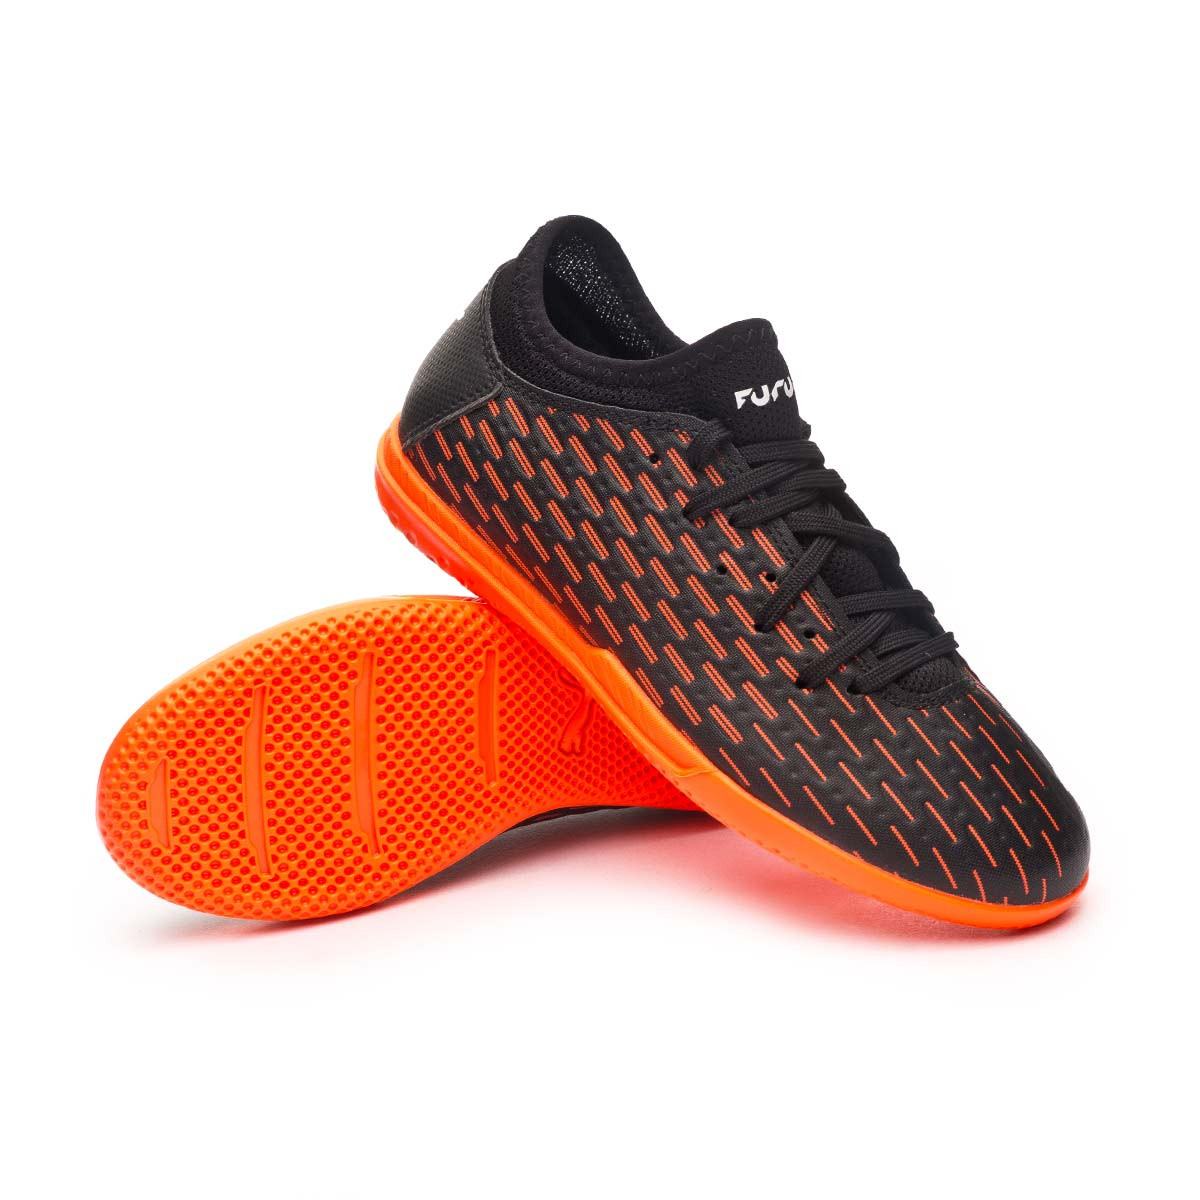 puma future indoor soccer shoes